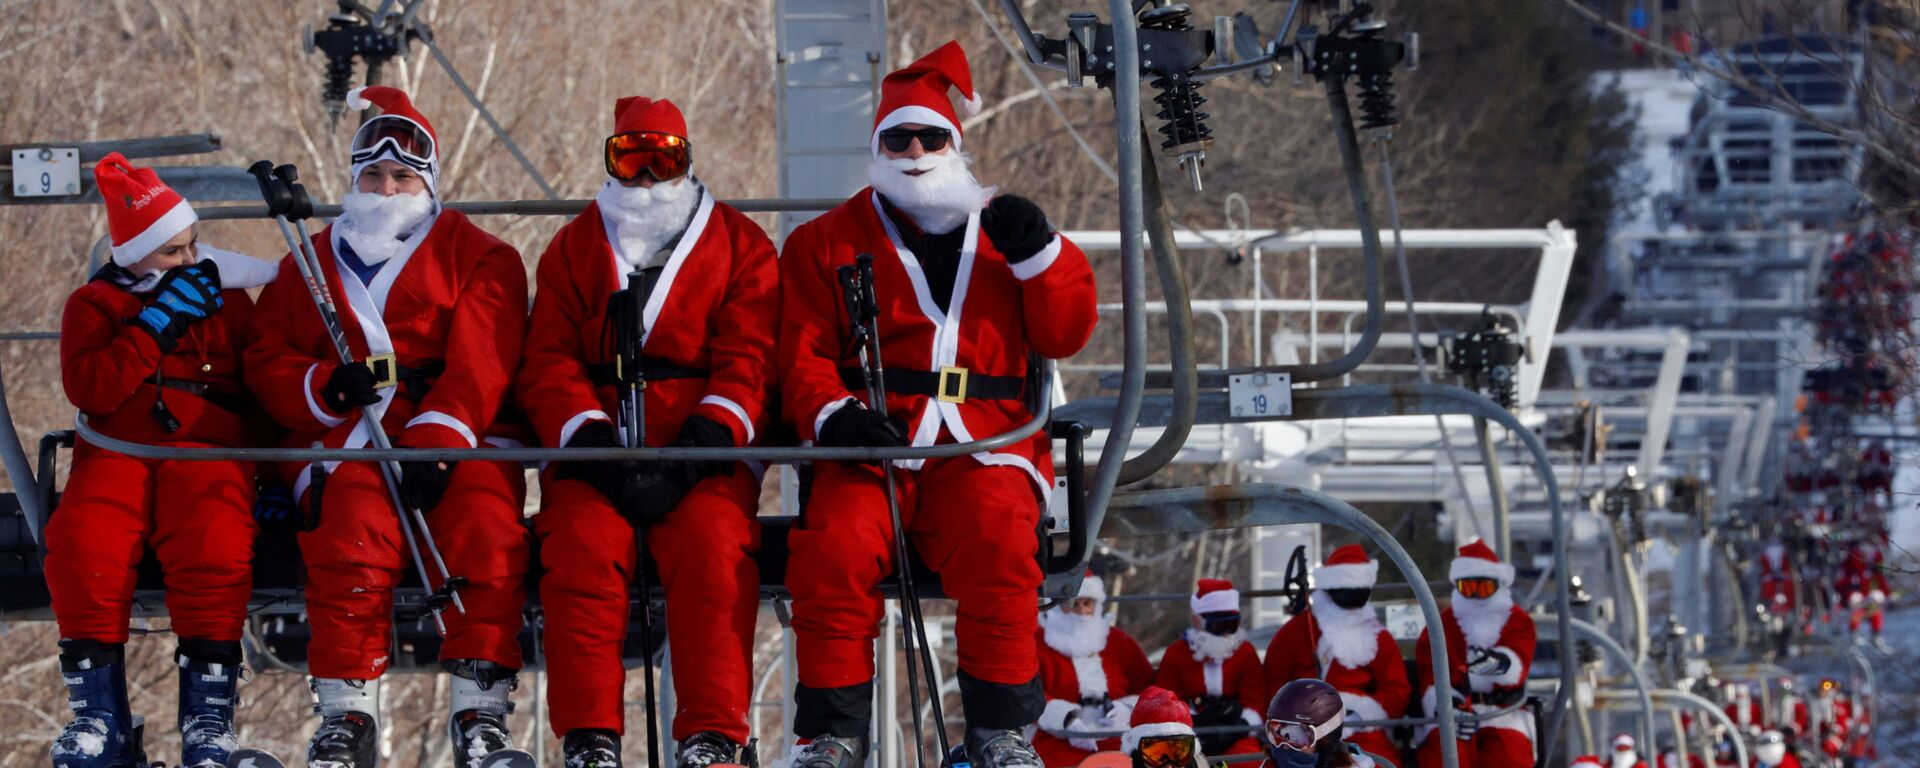 Лыжники в костюмах Санта-Клауса едут на подъемниках, чтобы принять участие в  в Вефиле, штат Мэн, США  - Sputnik Mundo, 1920, 06.12.2021